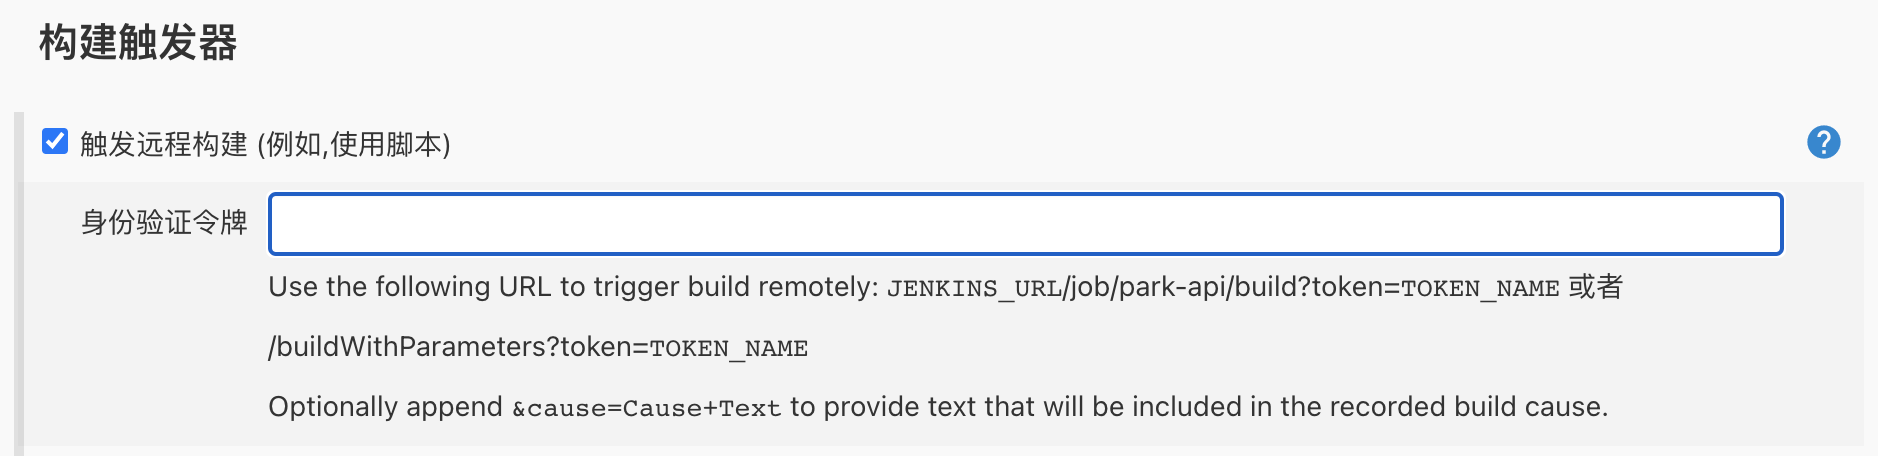 使用Jenkins自动化构建工具进行敏捷开发